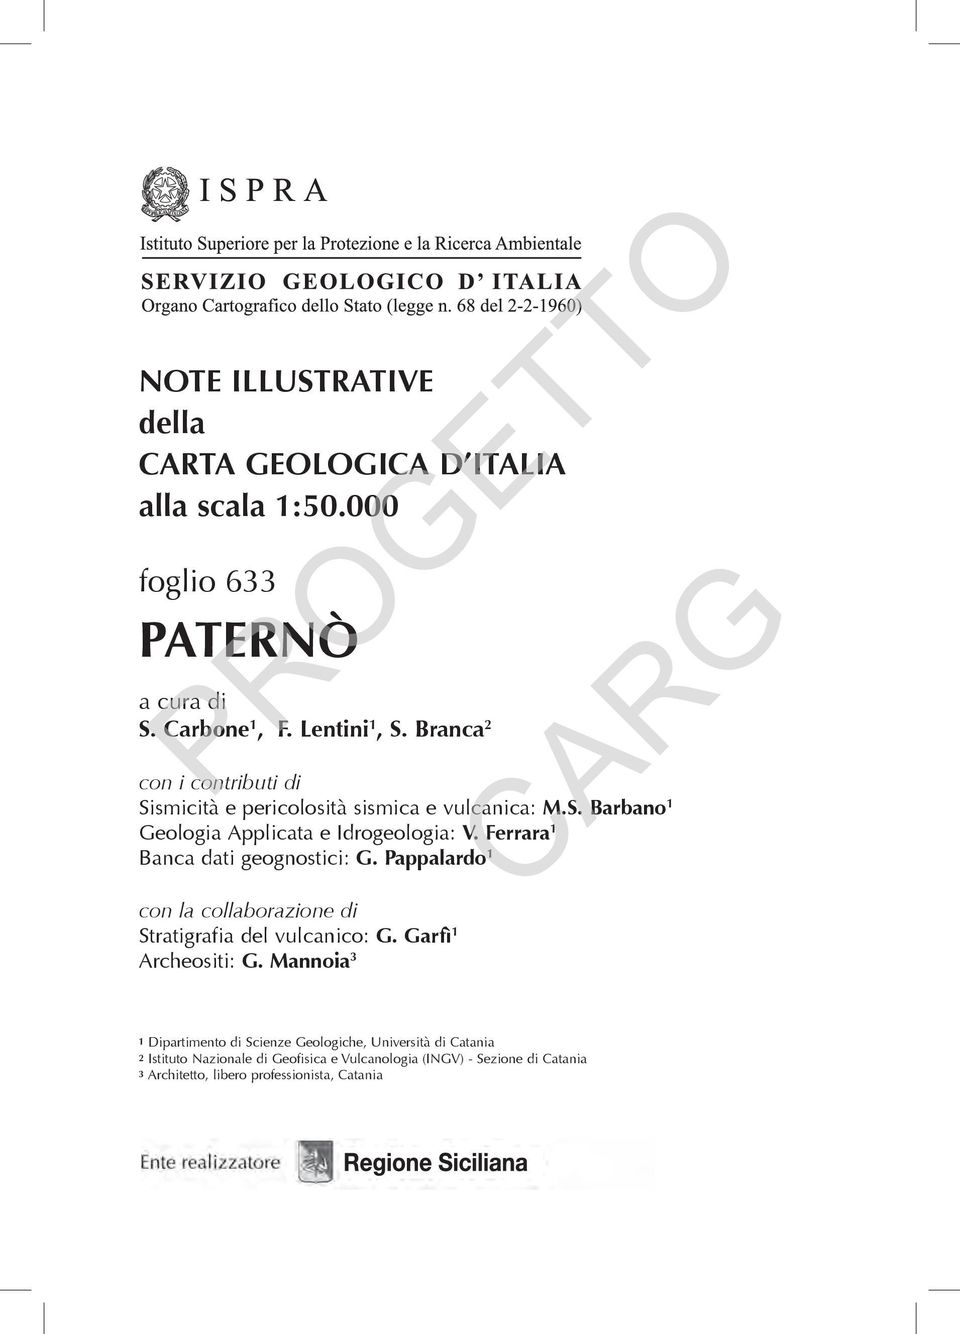 Ferrara 1 Banca dati geognostici: G. Pappalardo 1 con la collaborazione di Stratigrafia del vulcanico: G. Garfì 1 Archeositi: G.